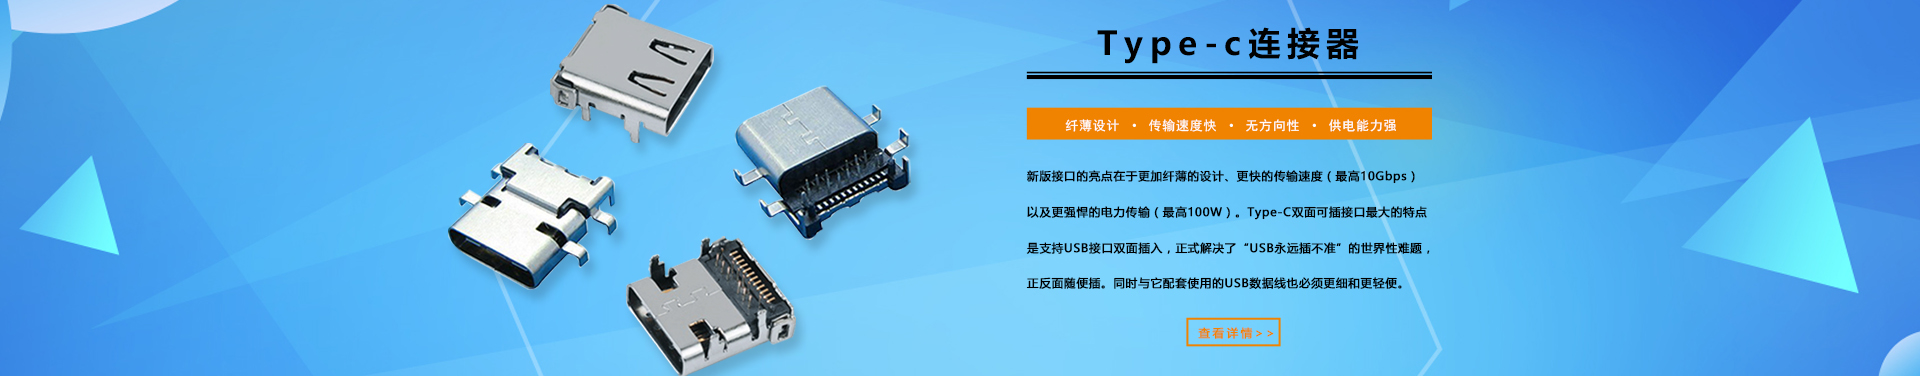 type-c连接器